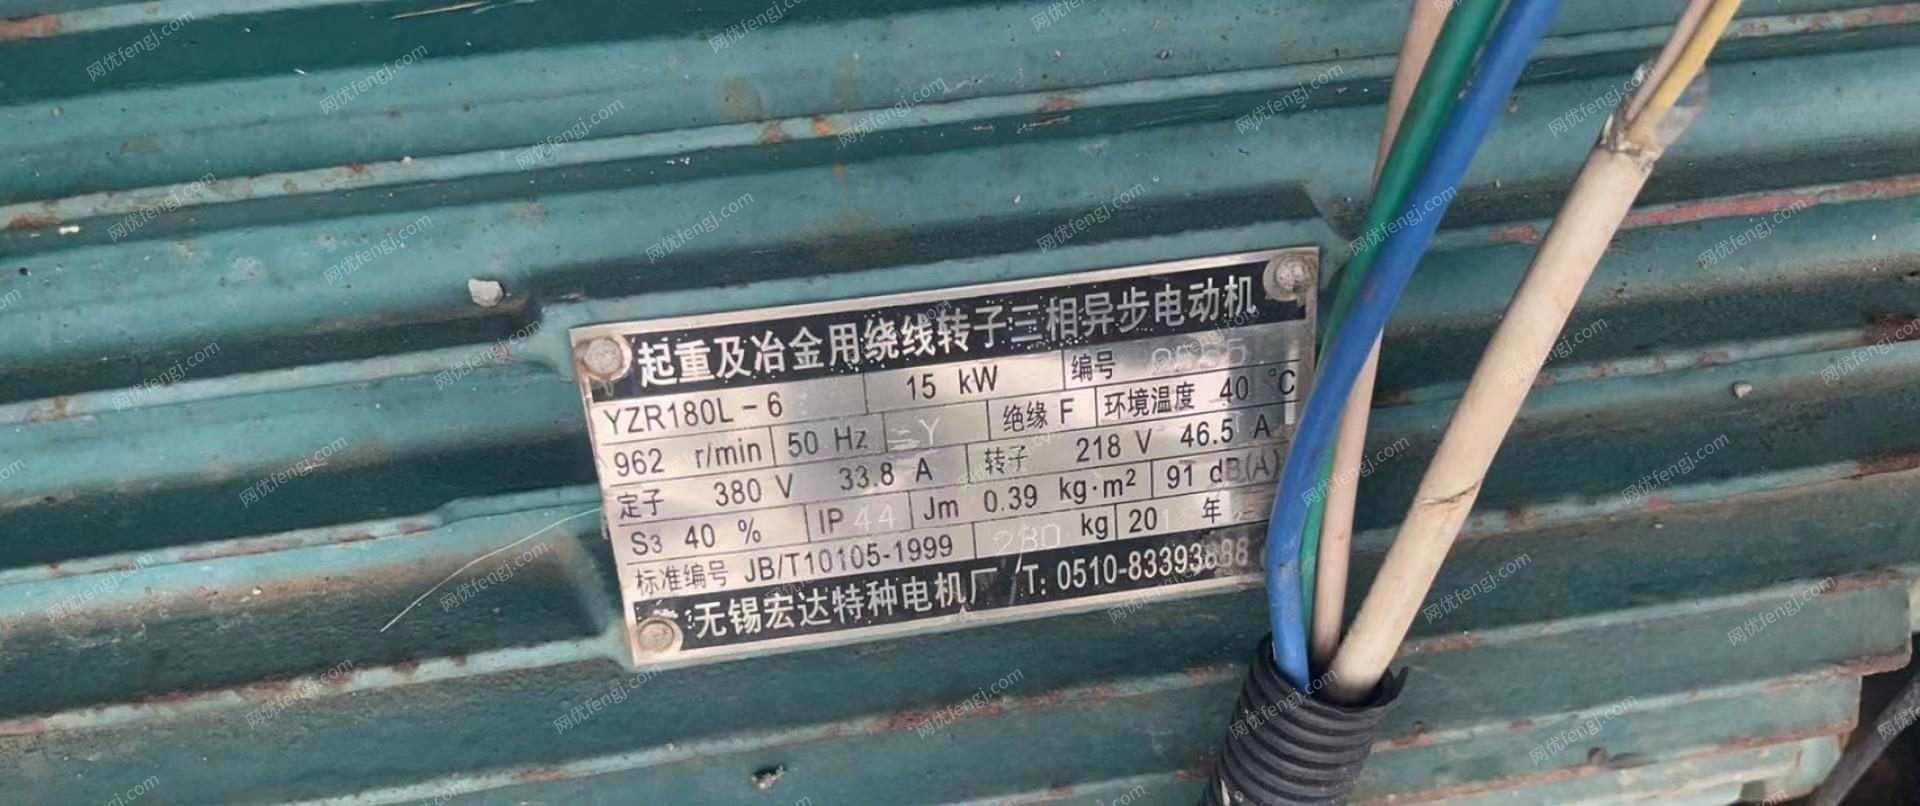 贵州贵阳地区处理八台闲置发电机